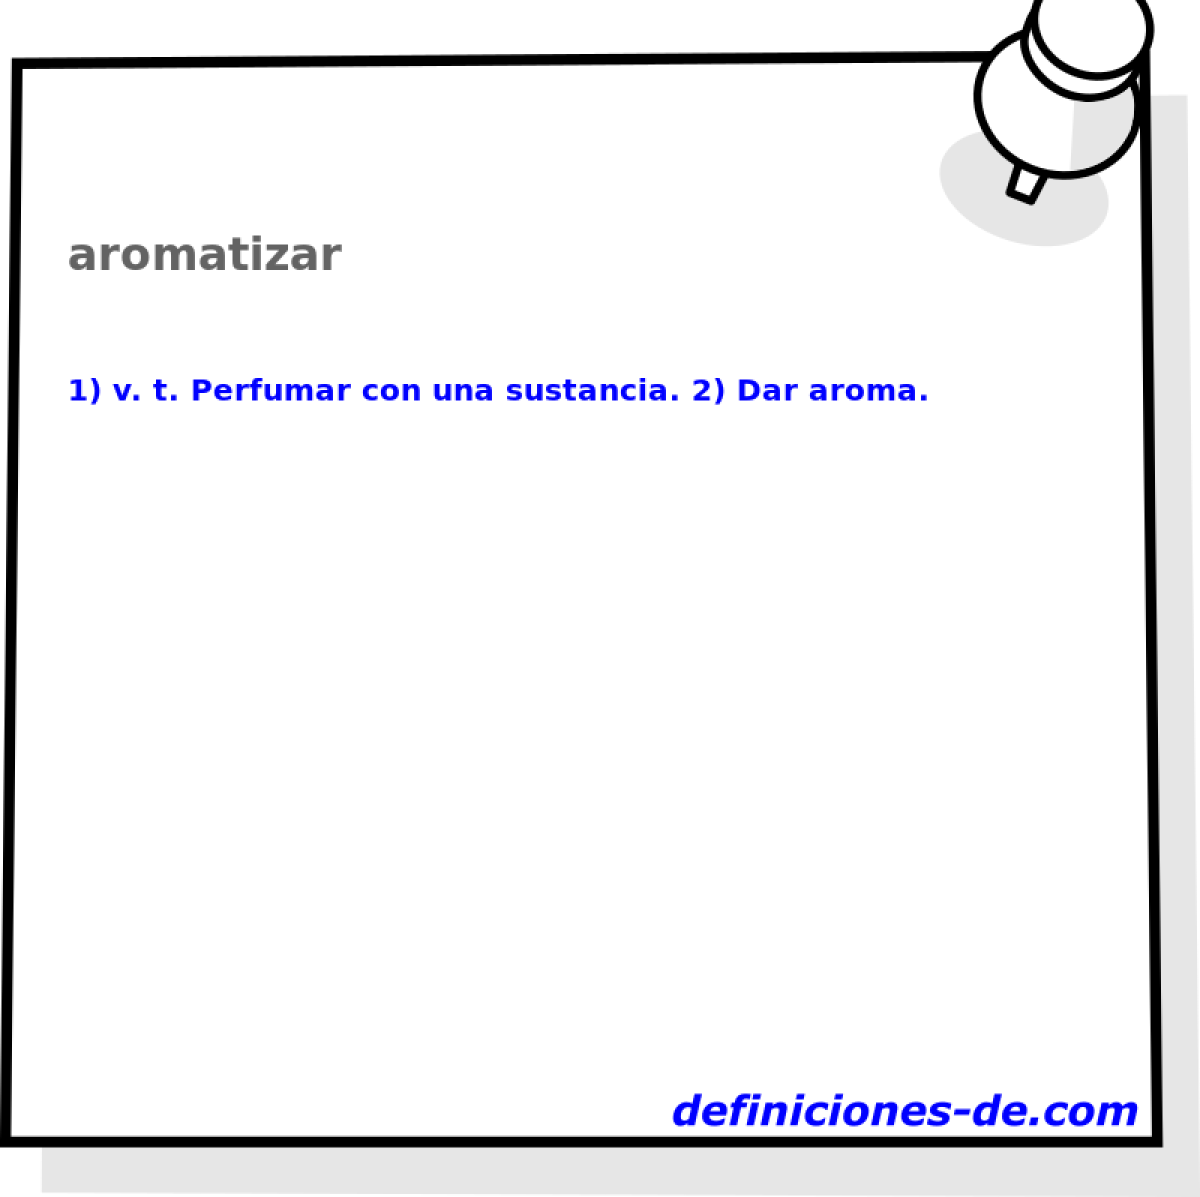 aromatizar 